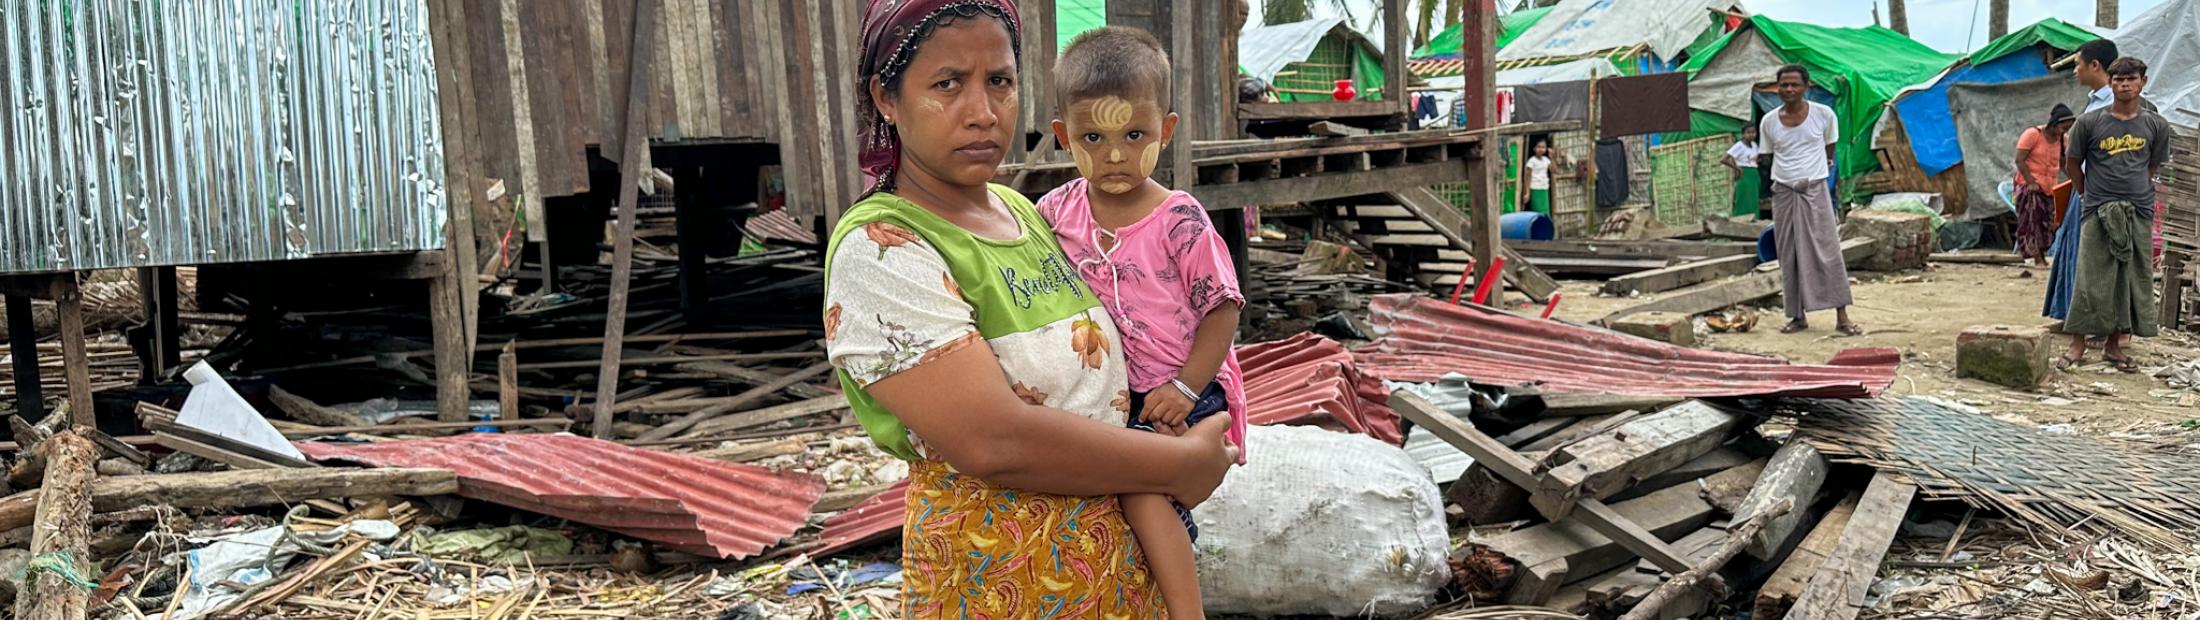 Famílias deslocadas em Myanmar preparam-se para a estação das monções, na sequência do ciclone 